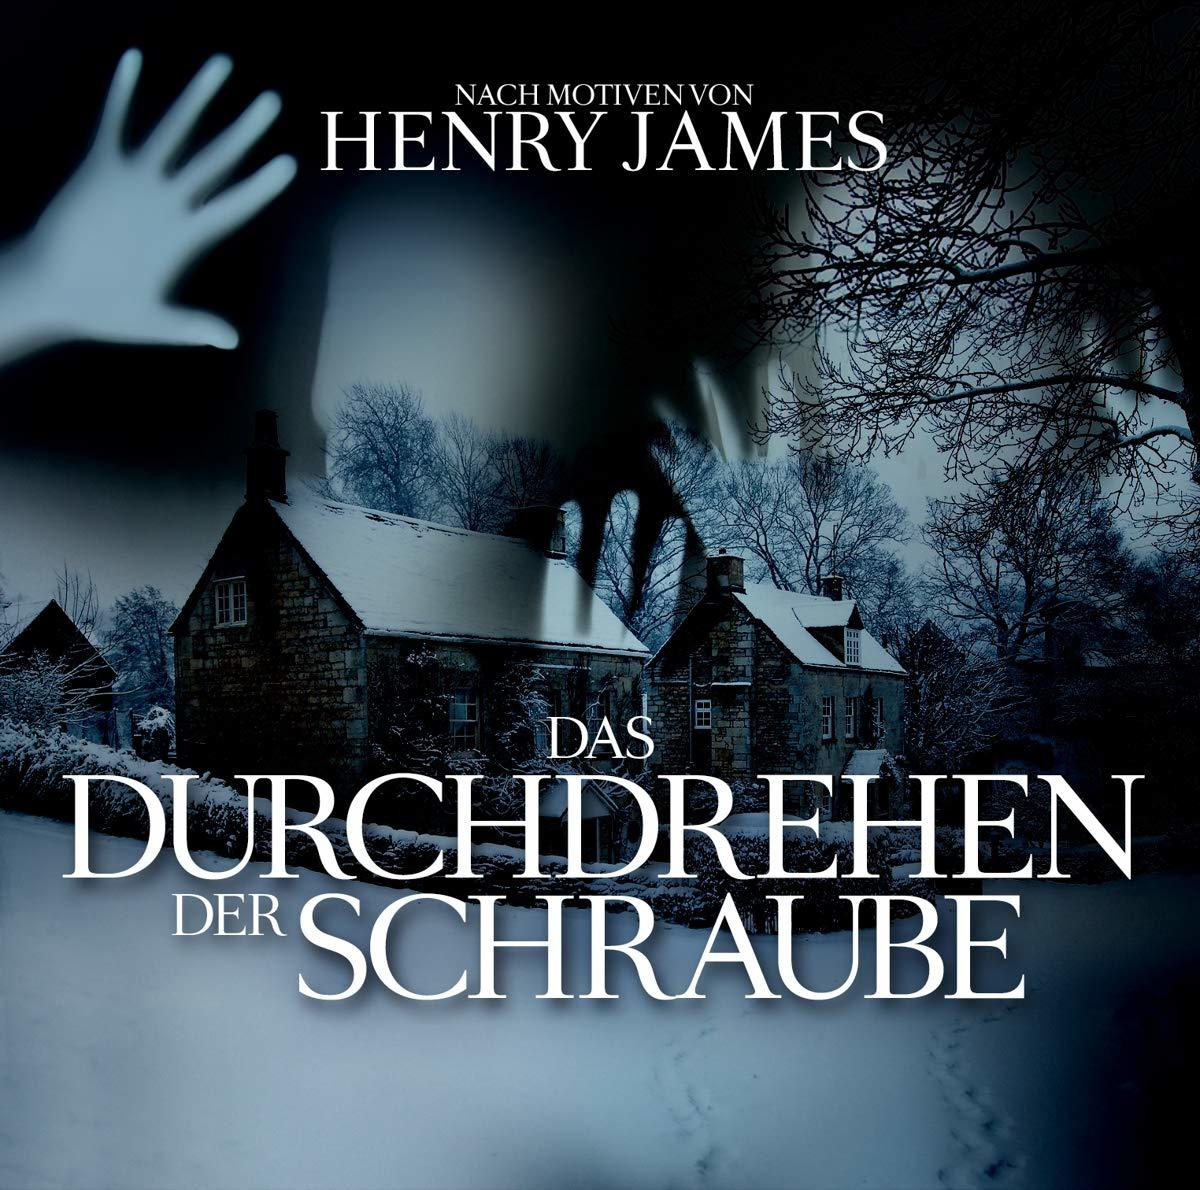 Durchdrehen (CD) - Schraube - James,Henry-Eftekhari,O.P.-Tippner,T. der Das